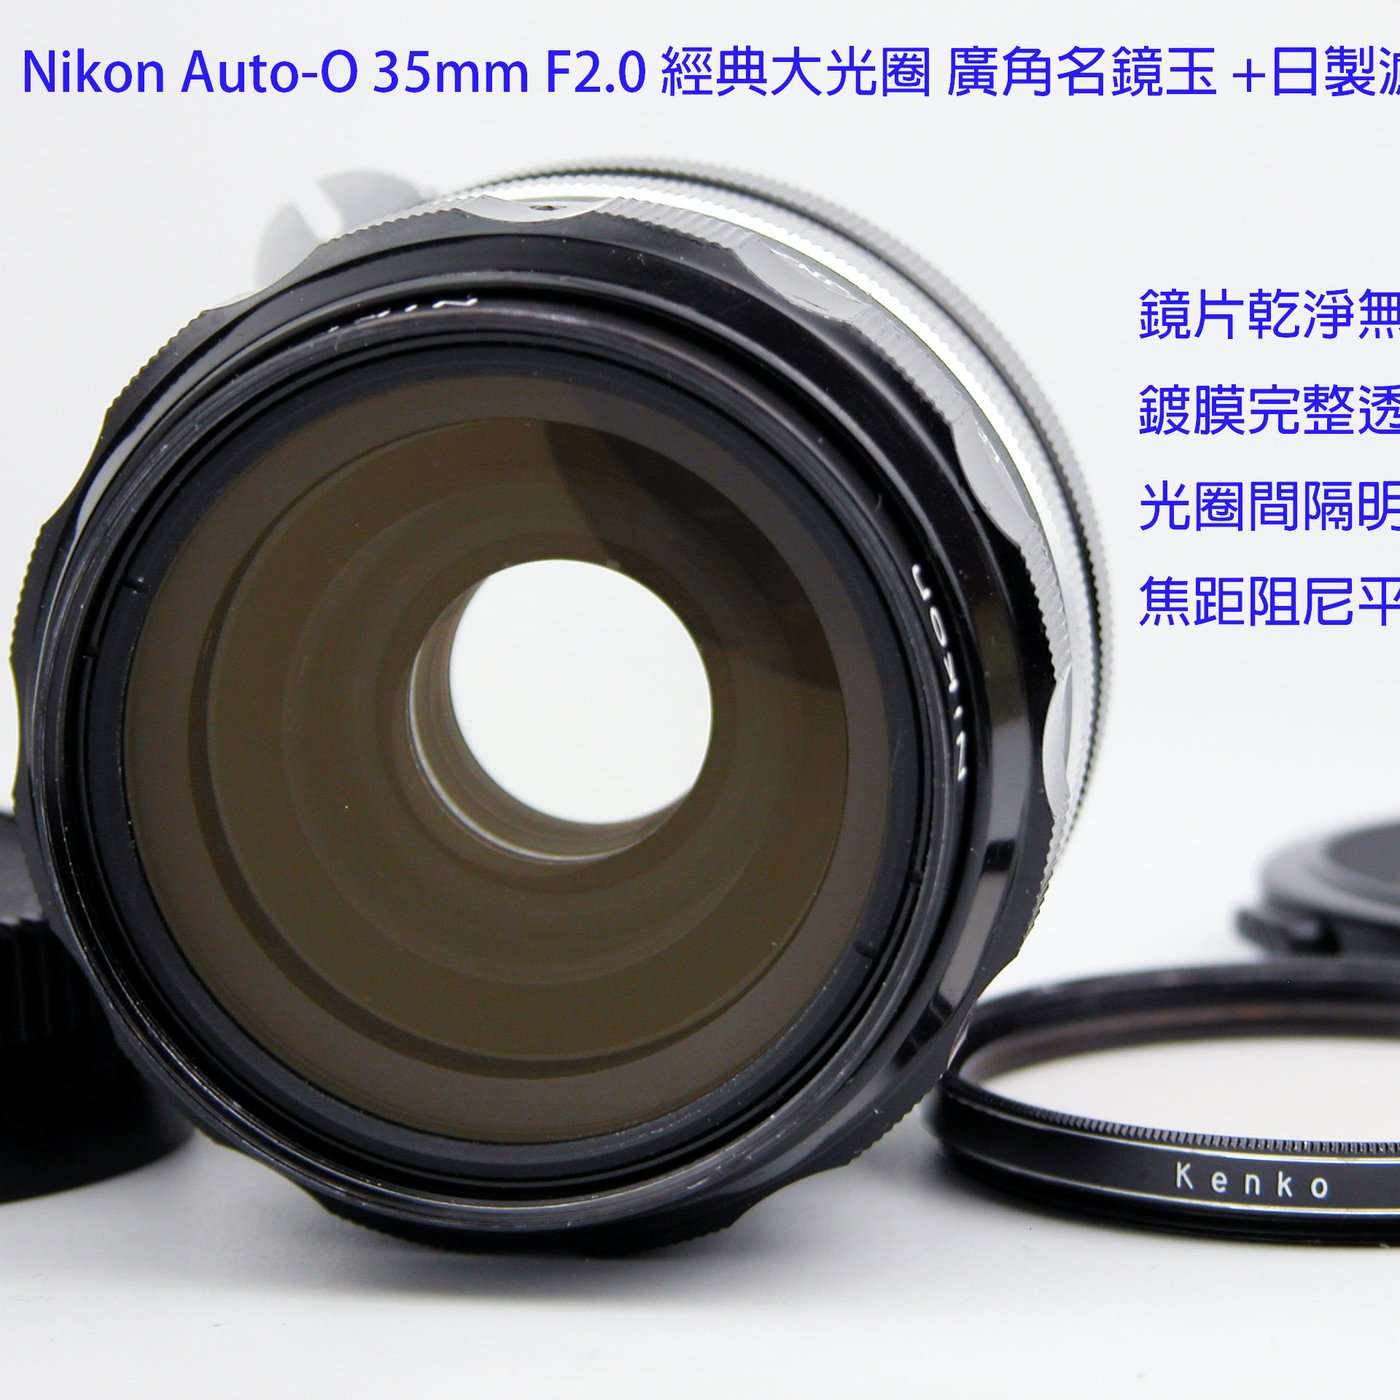 Nikon Auto-O 35mm F2.0 經典大光圈廣角名鏡玉+日製濾鏡| Yahoo奇摩拍賣